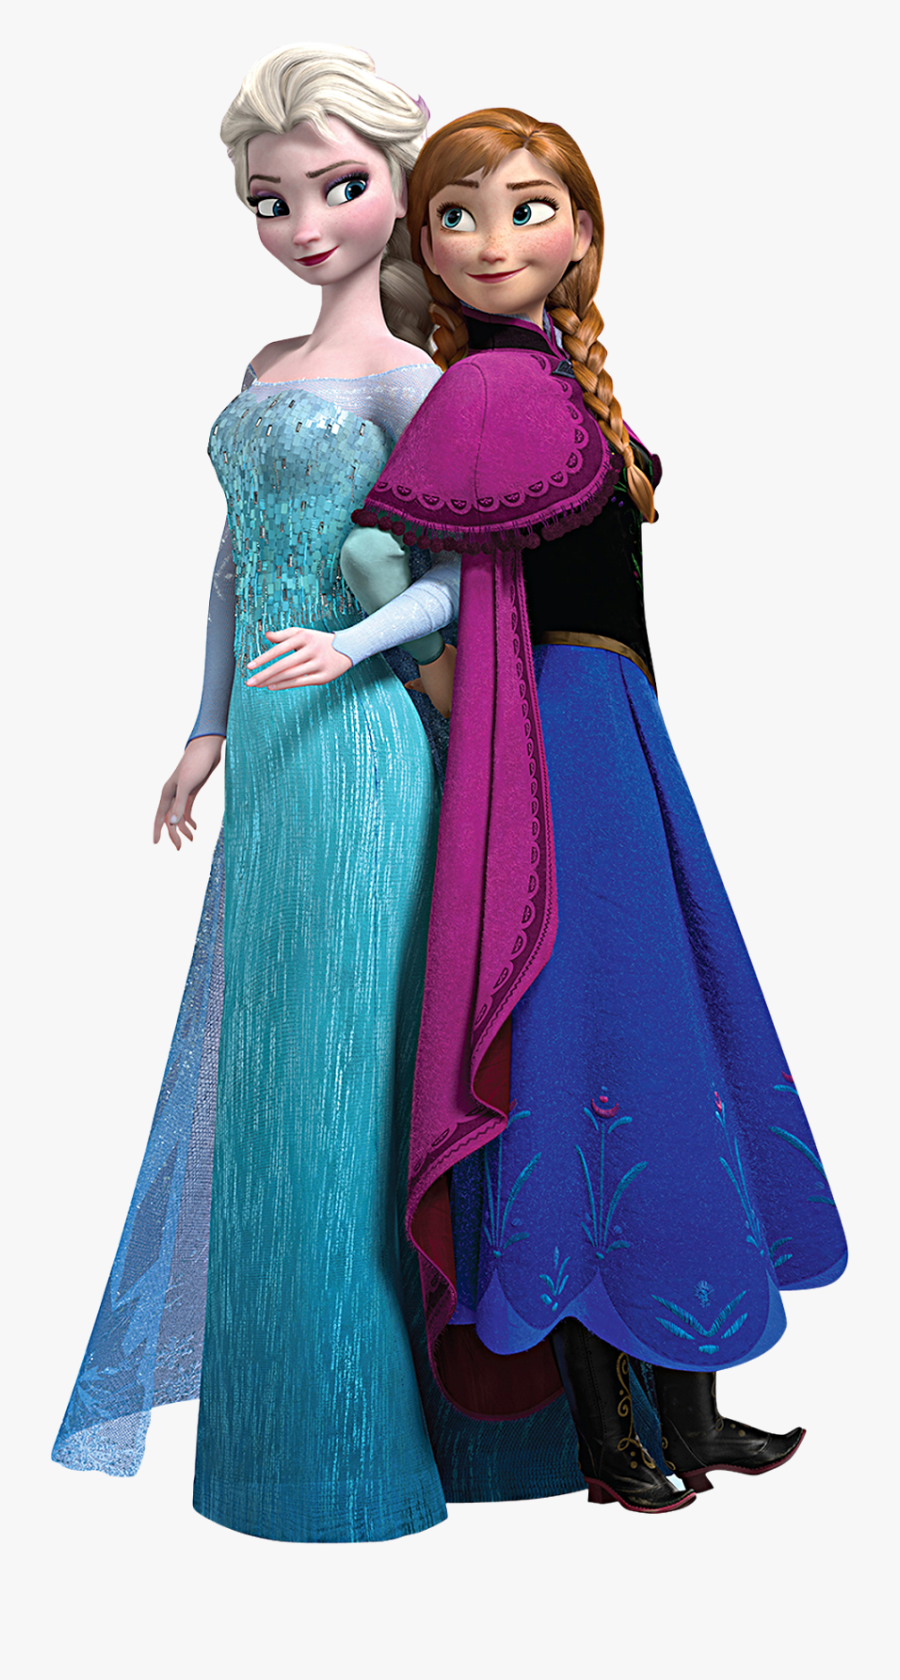 Elsa & Anna Clipart, Transparent Clipart